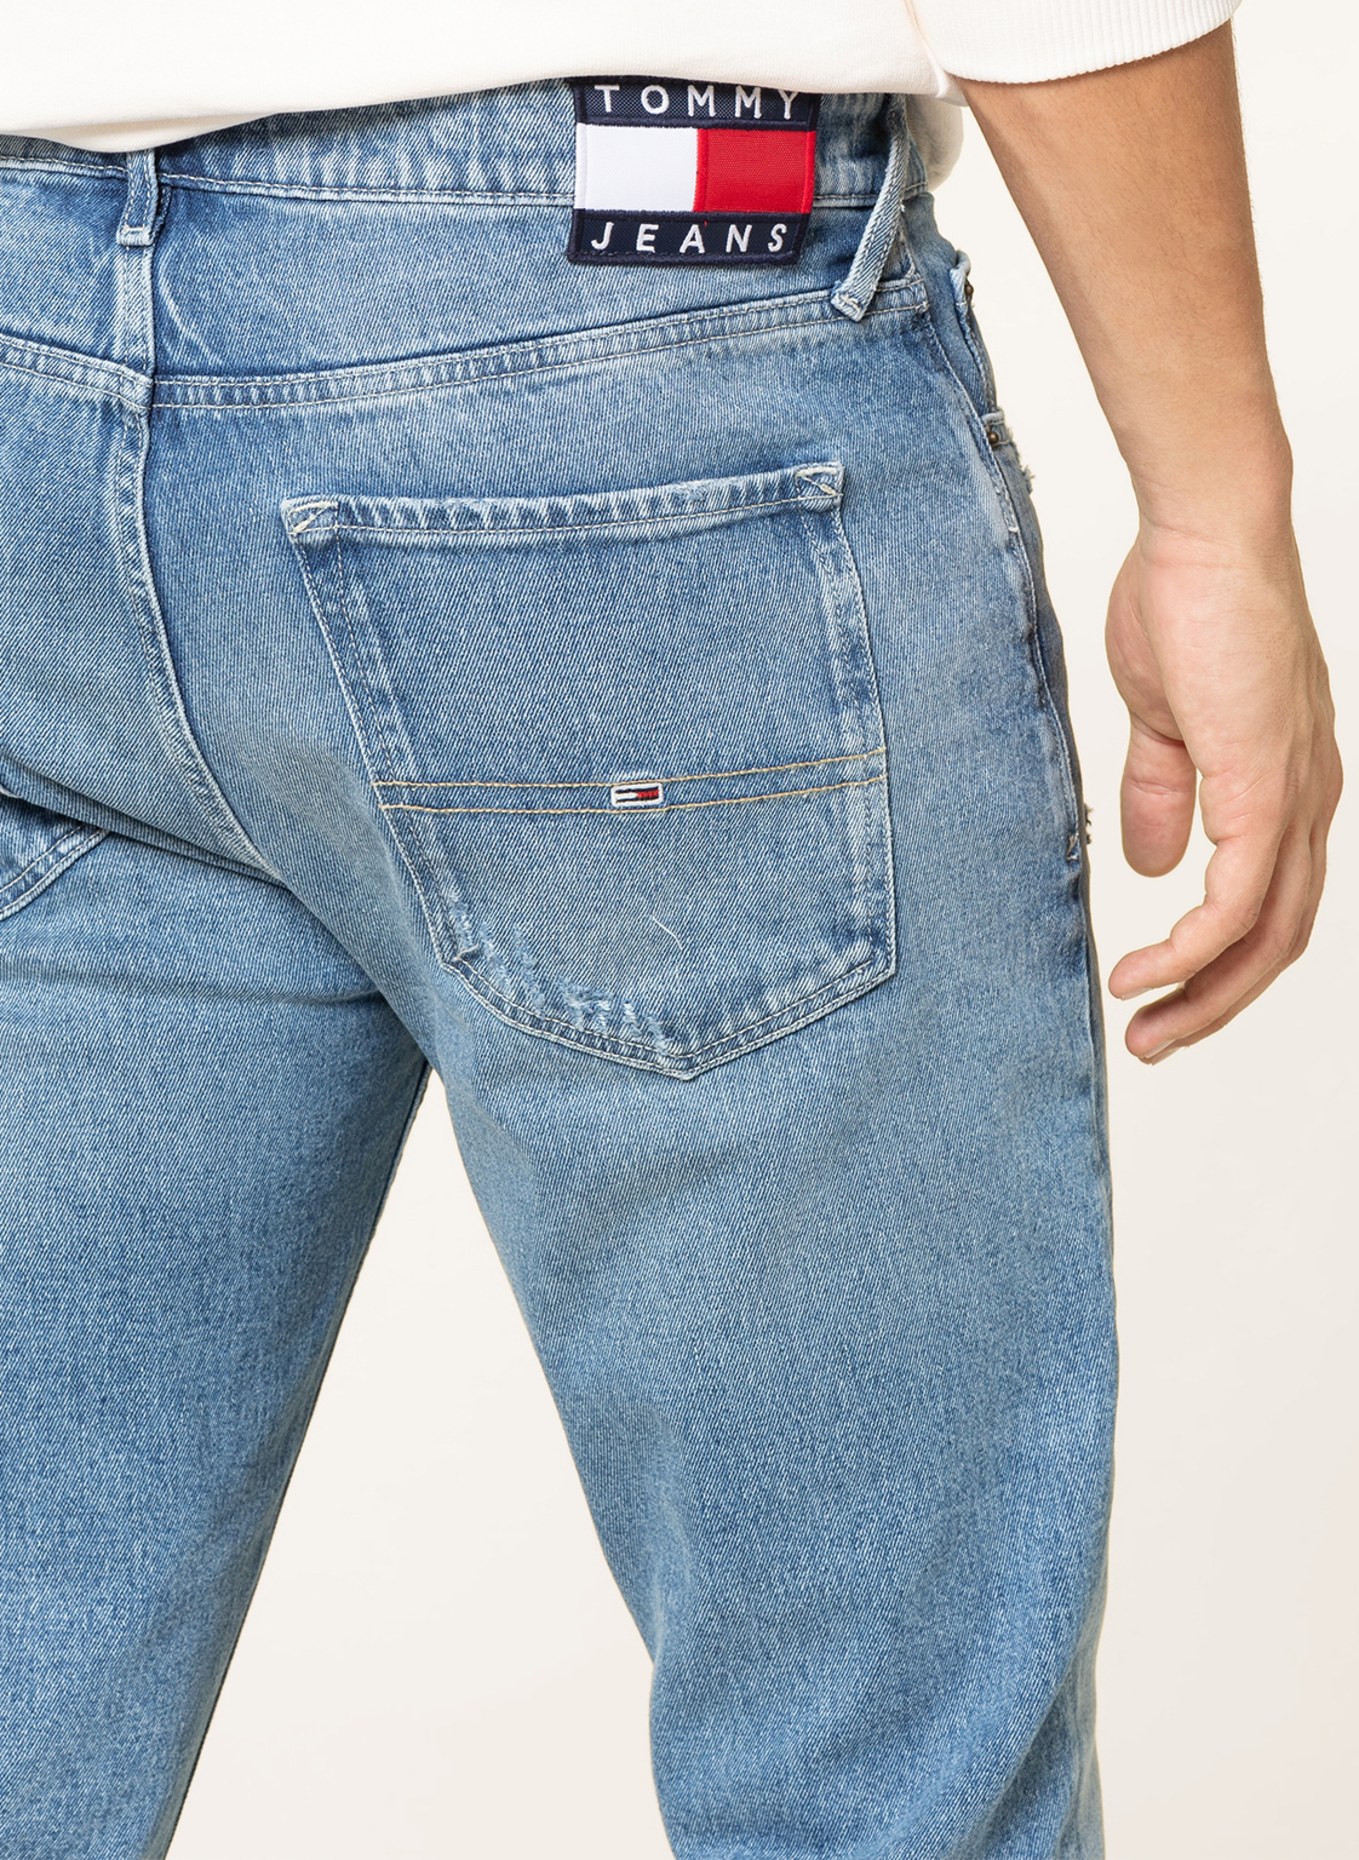 TOMMY JEANS Destroyed Jeans SCANTON Slim Fit, Farbe: 1A5 Denim Light (Bild 5)